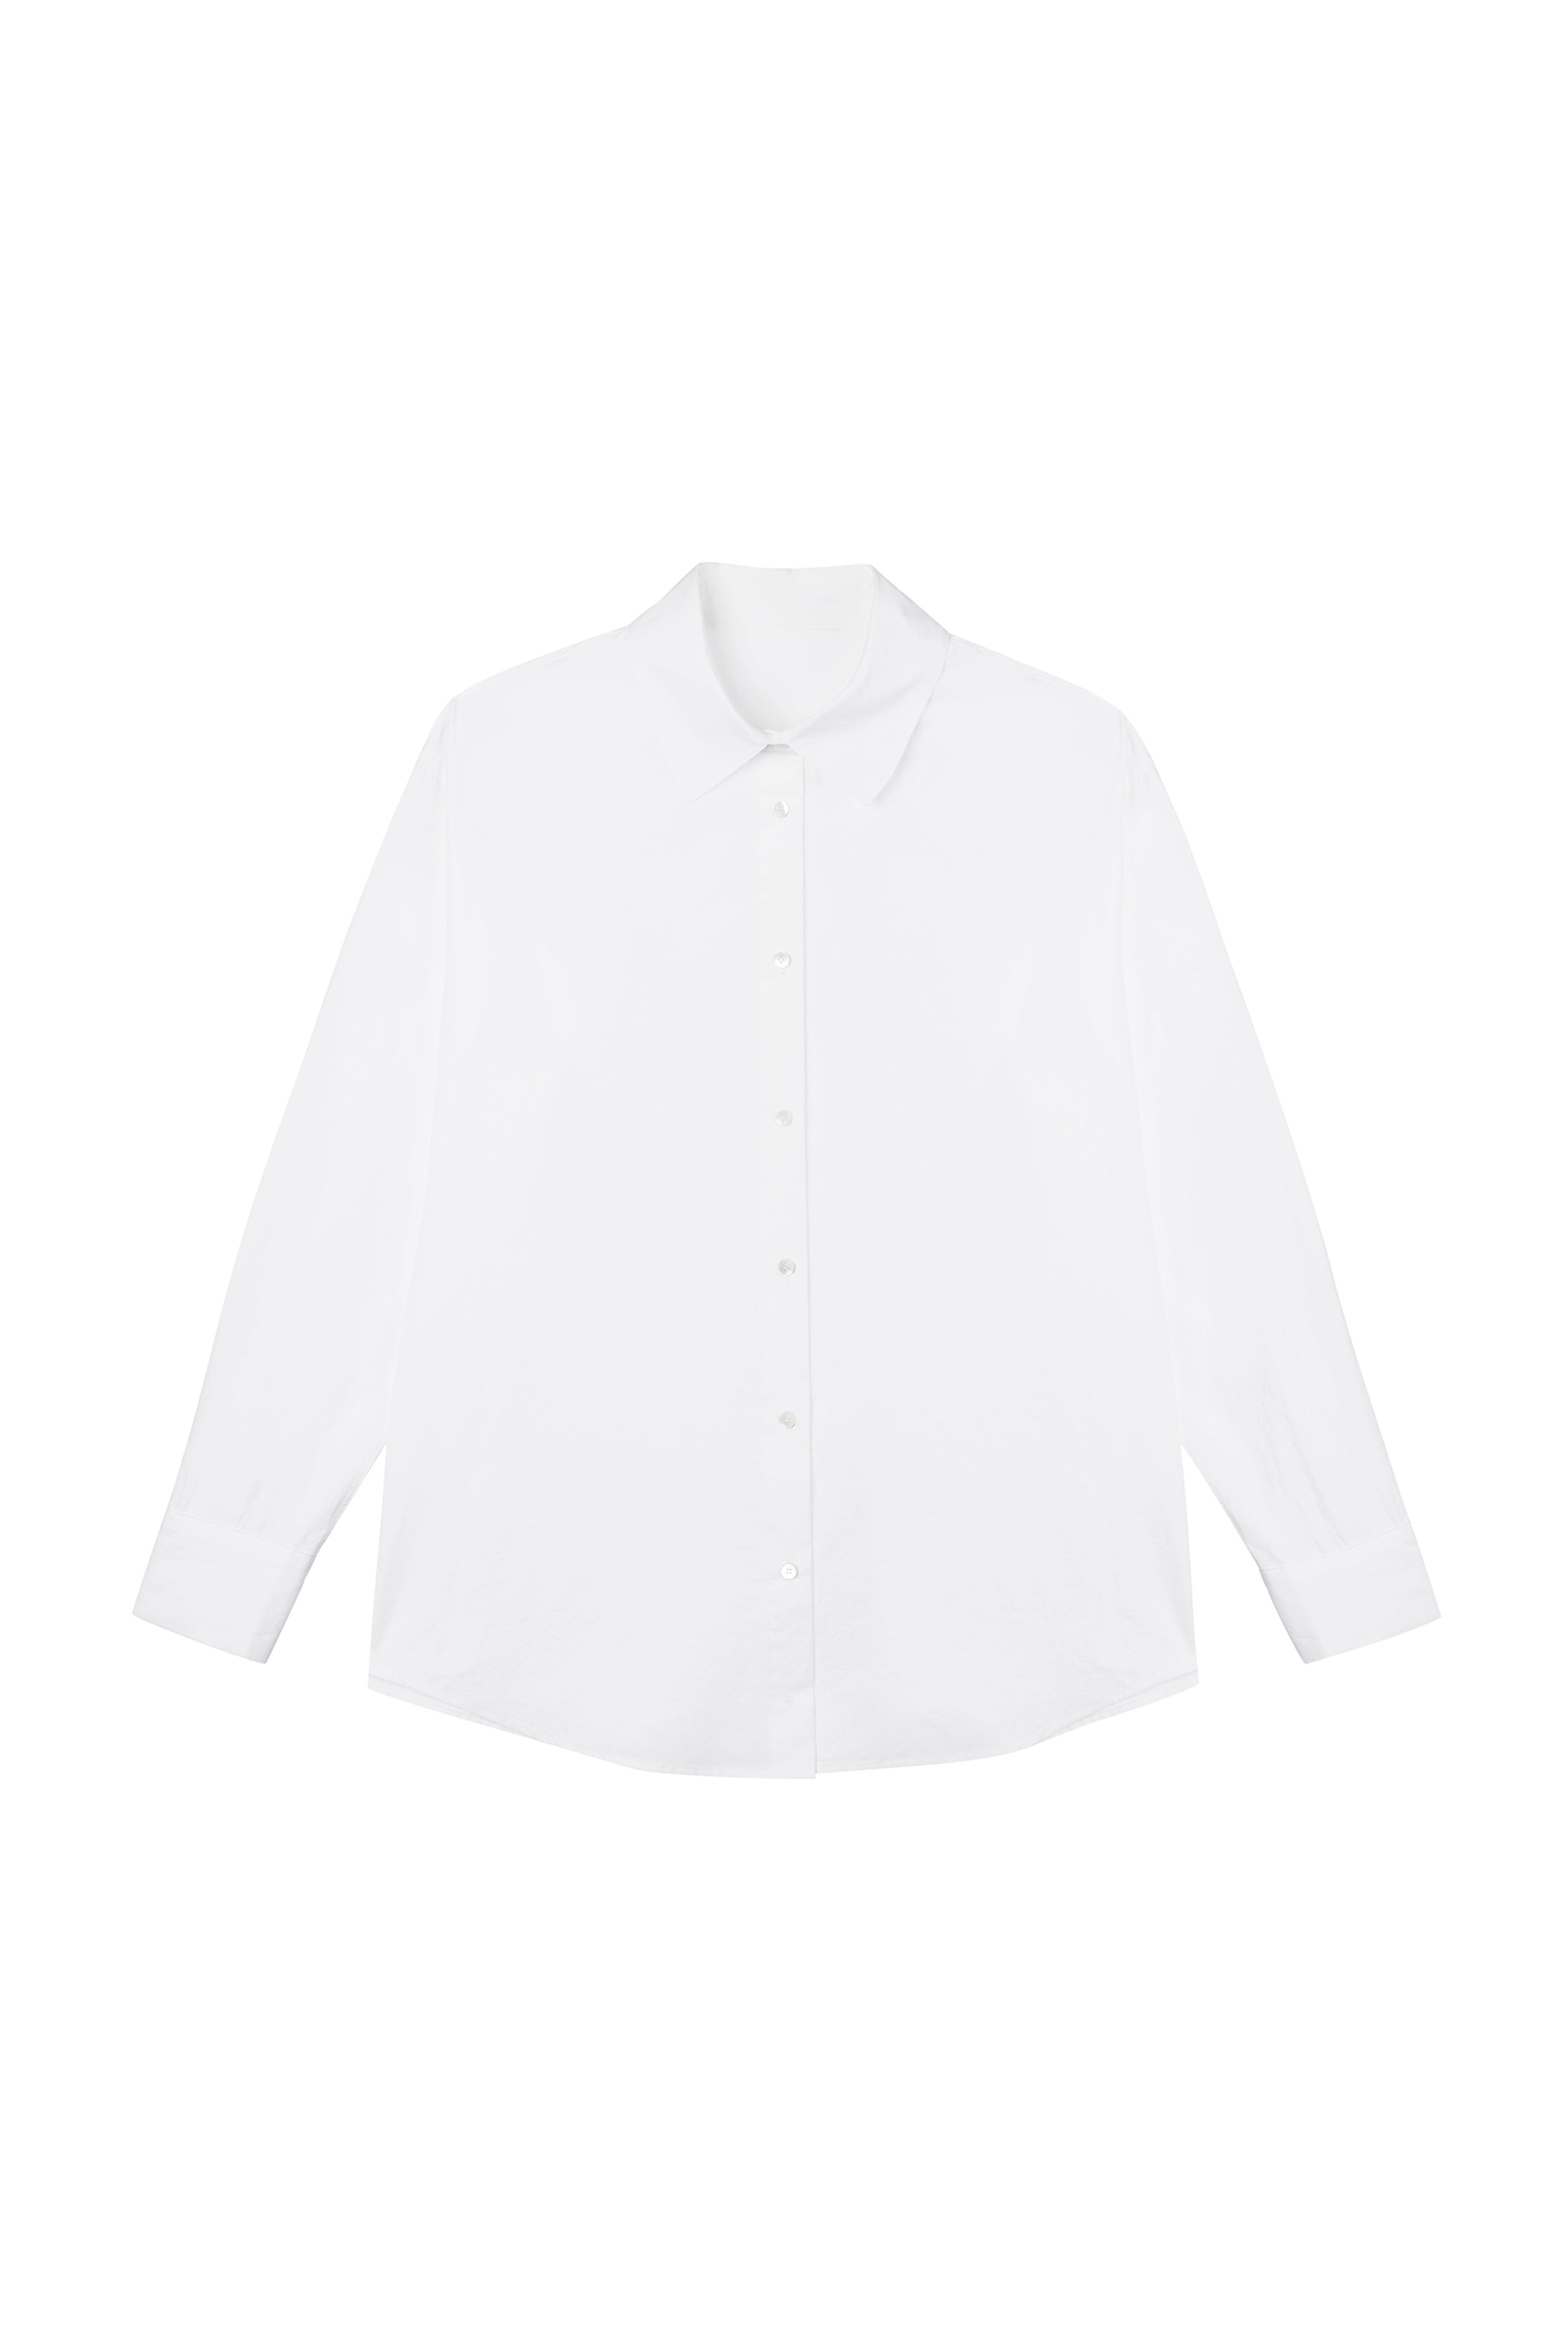 2nd) Basic Shirts 80&#039; Washed White